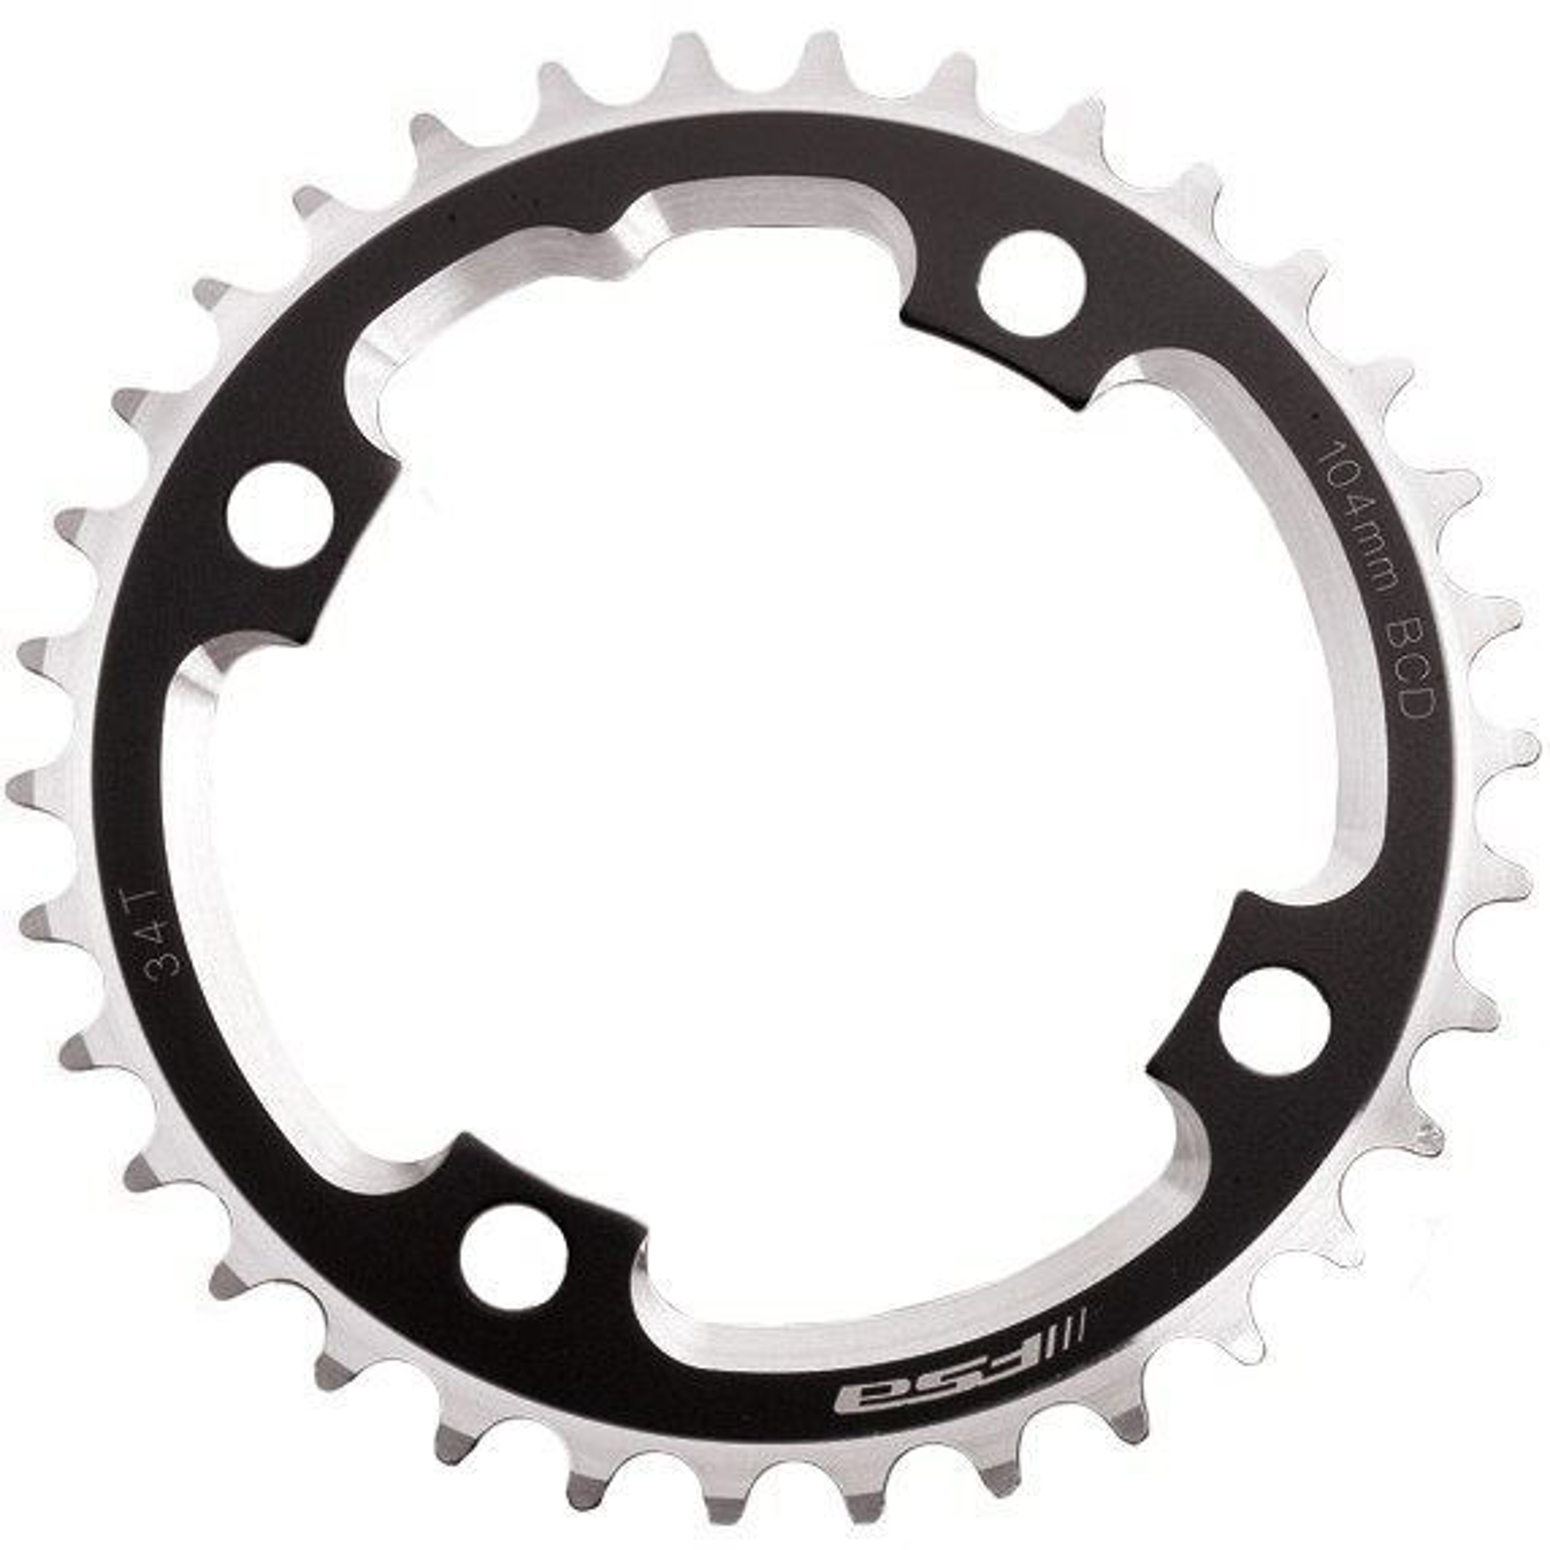 Imagem de Roda pedaleira FSA DH preto alumínio CNC, 104x32T(3mm)